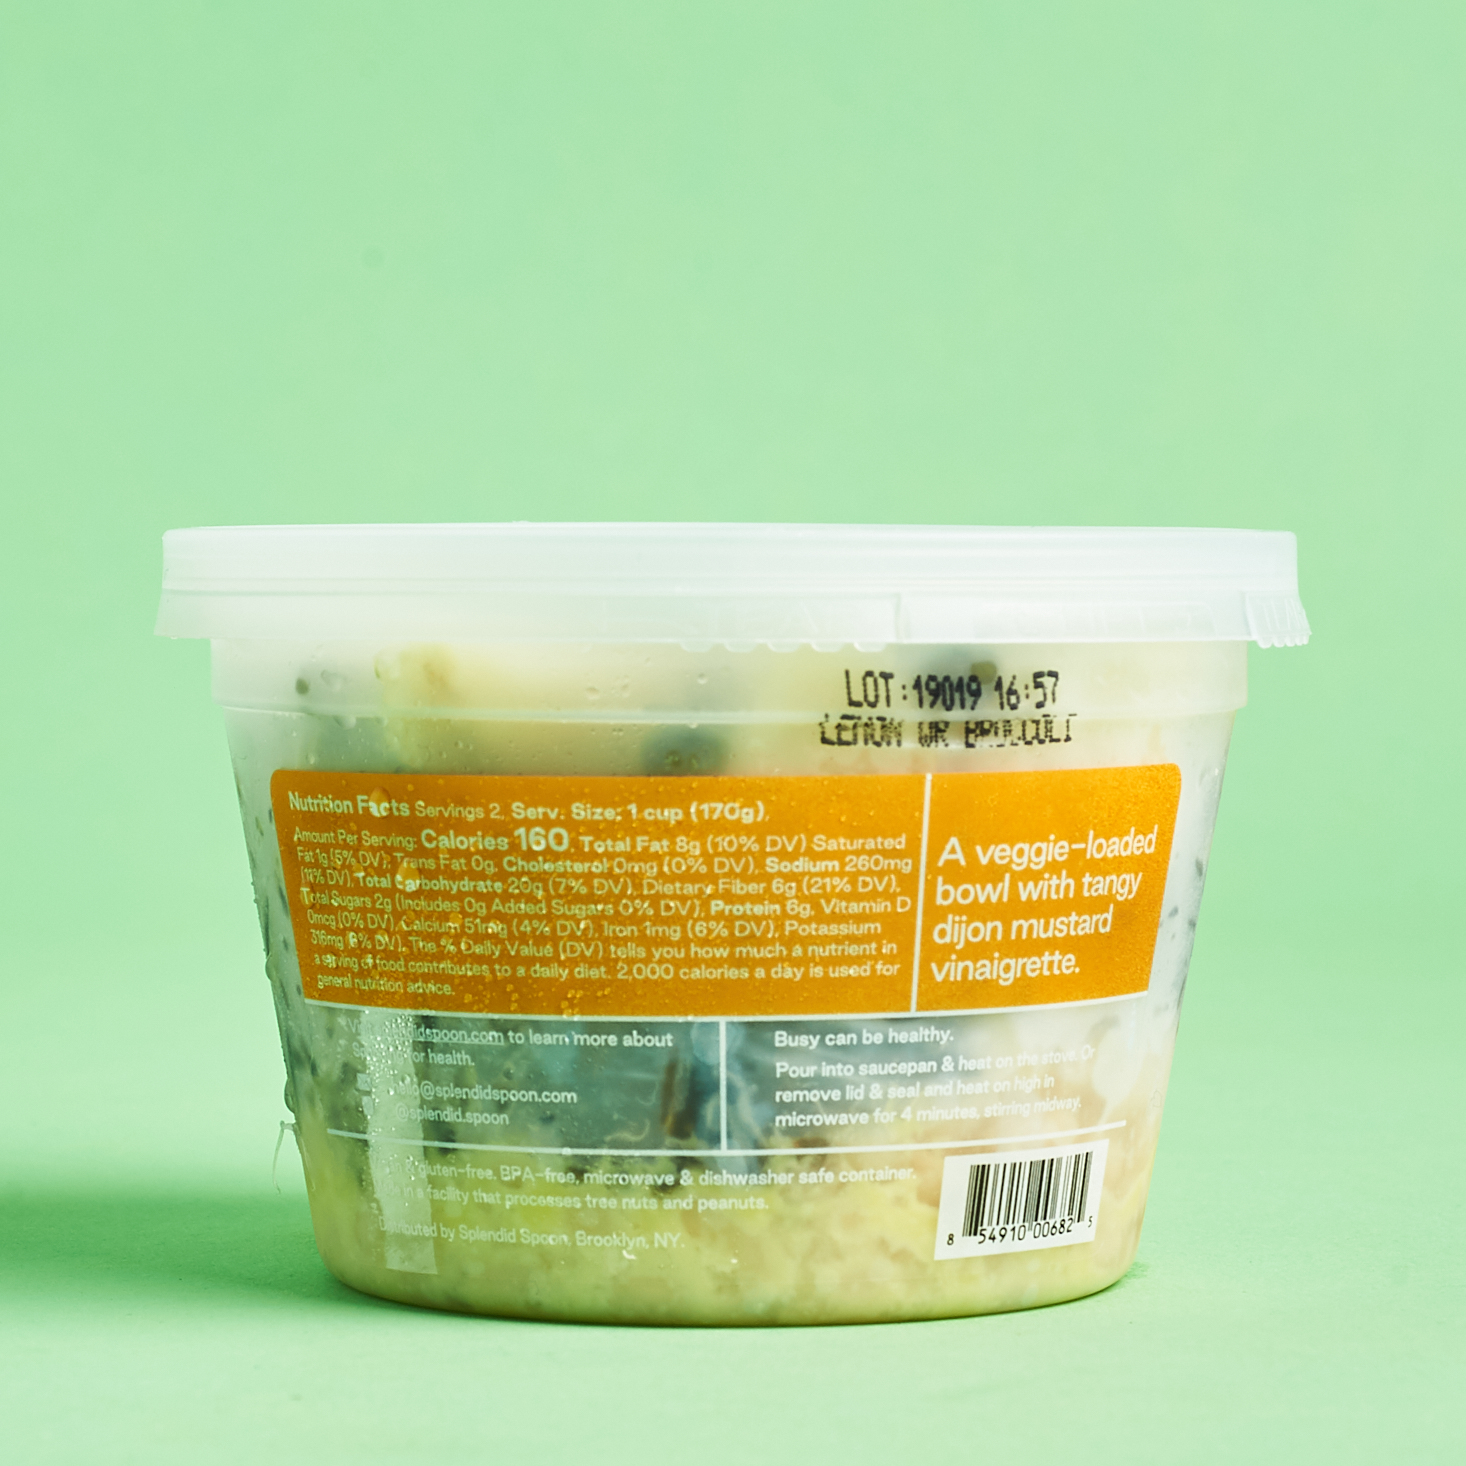 splendid spoon cauliflower lentil bowl ingredients label